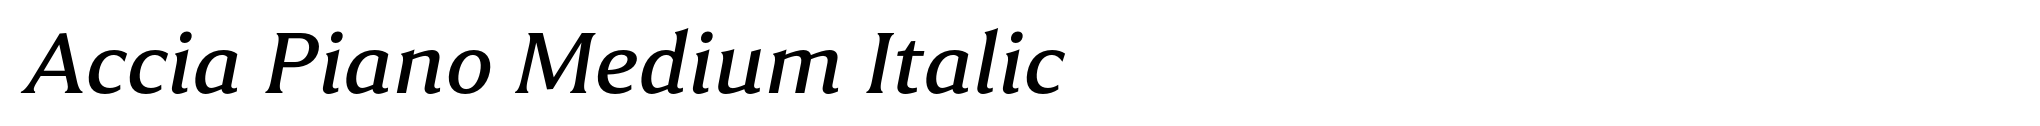 Accia Piano Medium Italic image